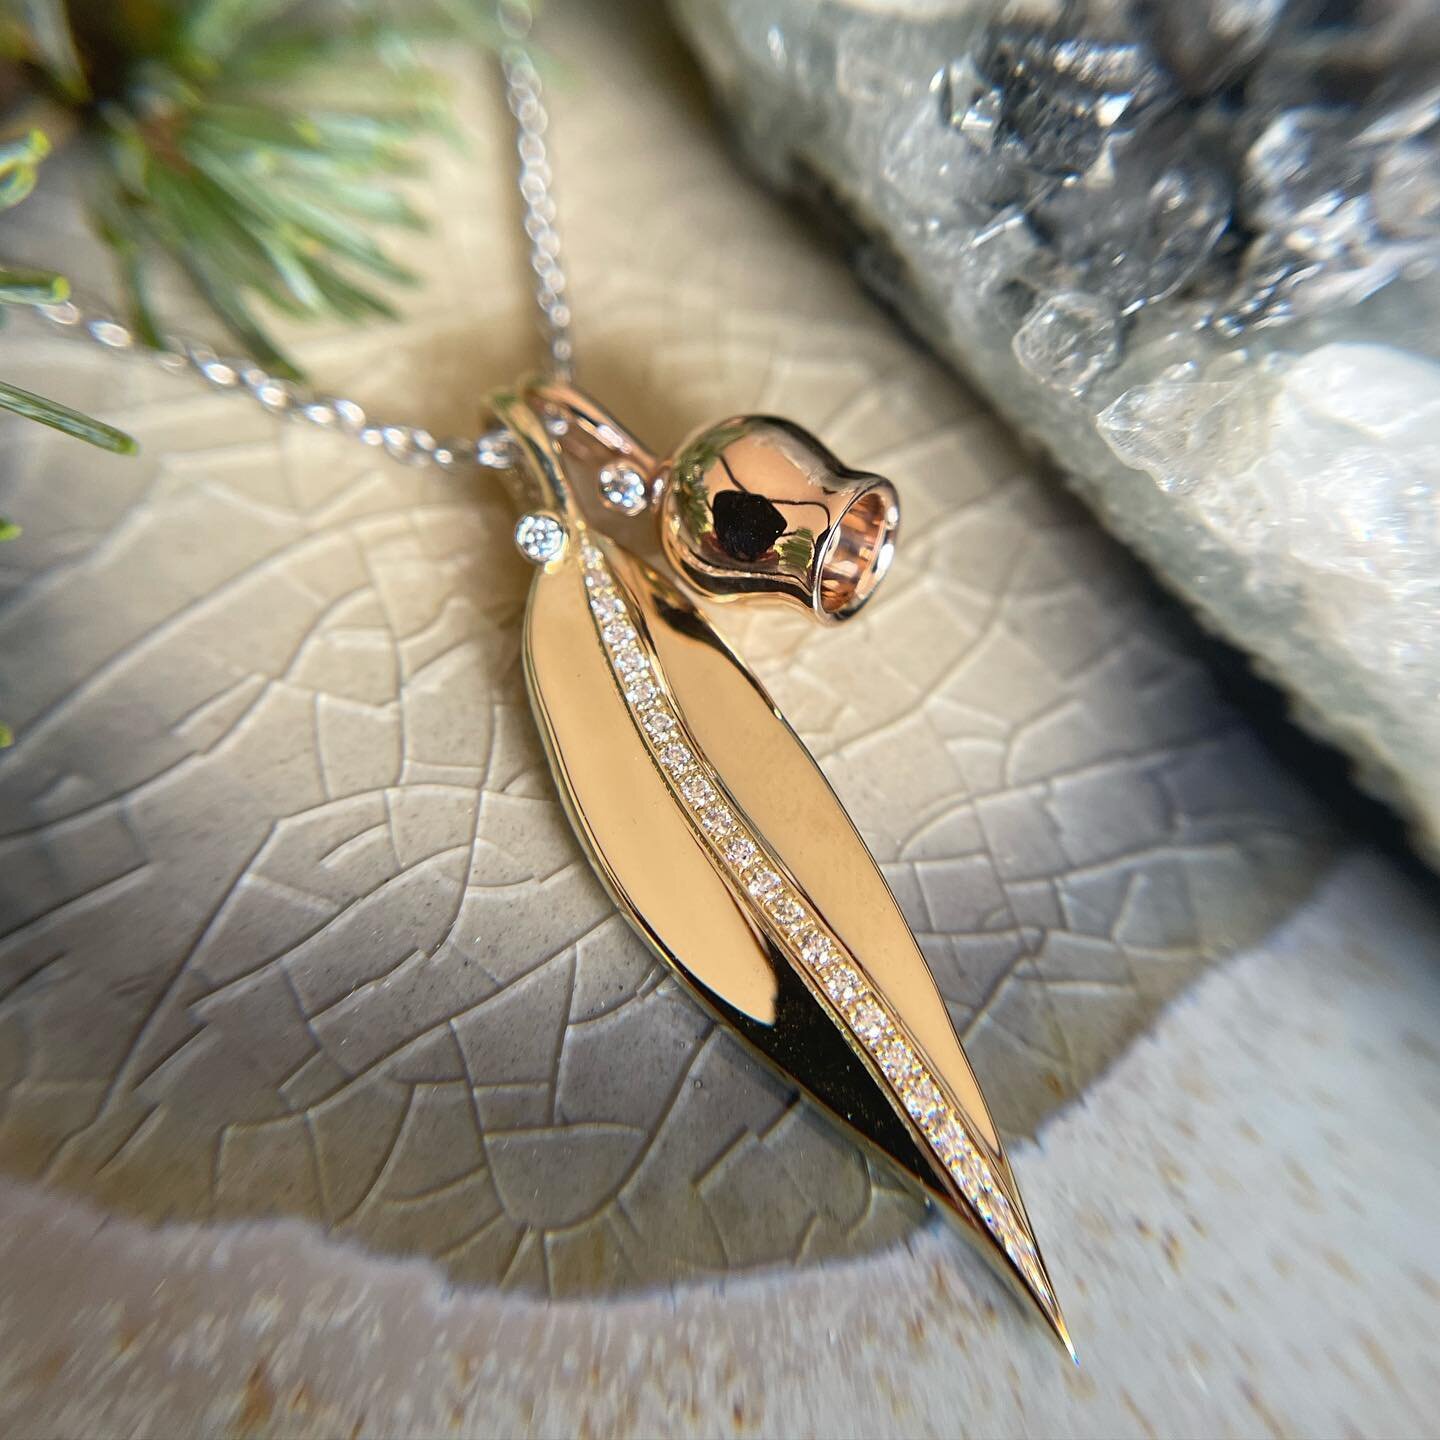 ✨Botanical Magic✨
.
.
#australianmadejewellery #botanicaljewellery #magicaljewellery #sydneyjewellerydesigner #talisman #magicaljewellery #gumnutjewellery #gumleafjewellery